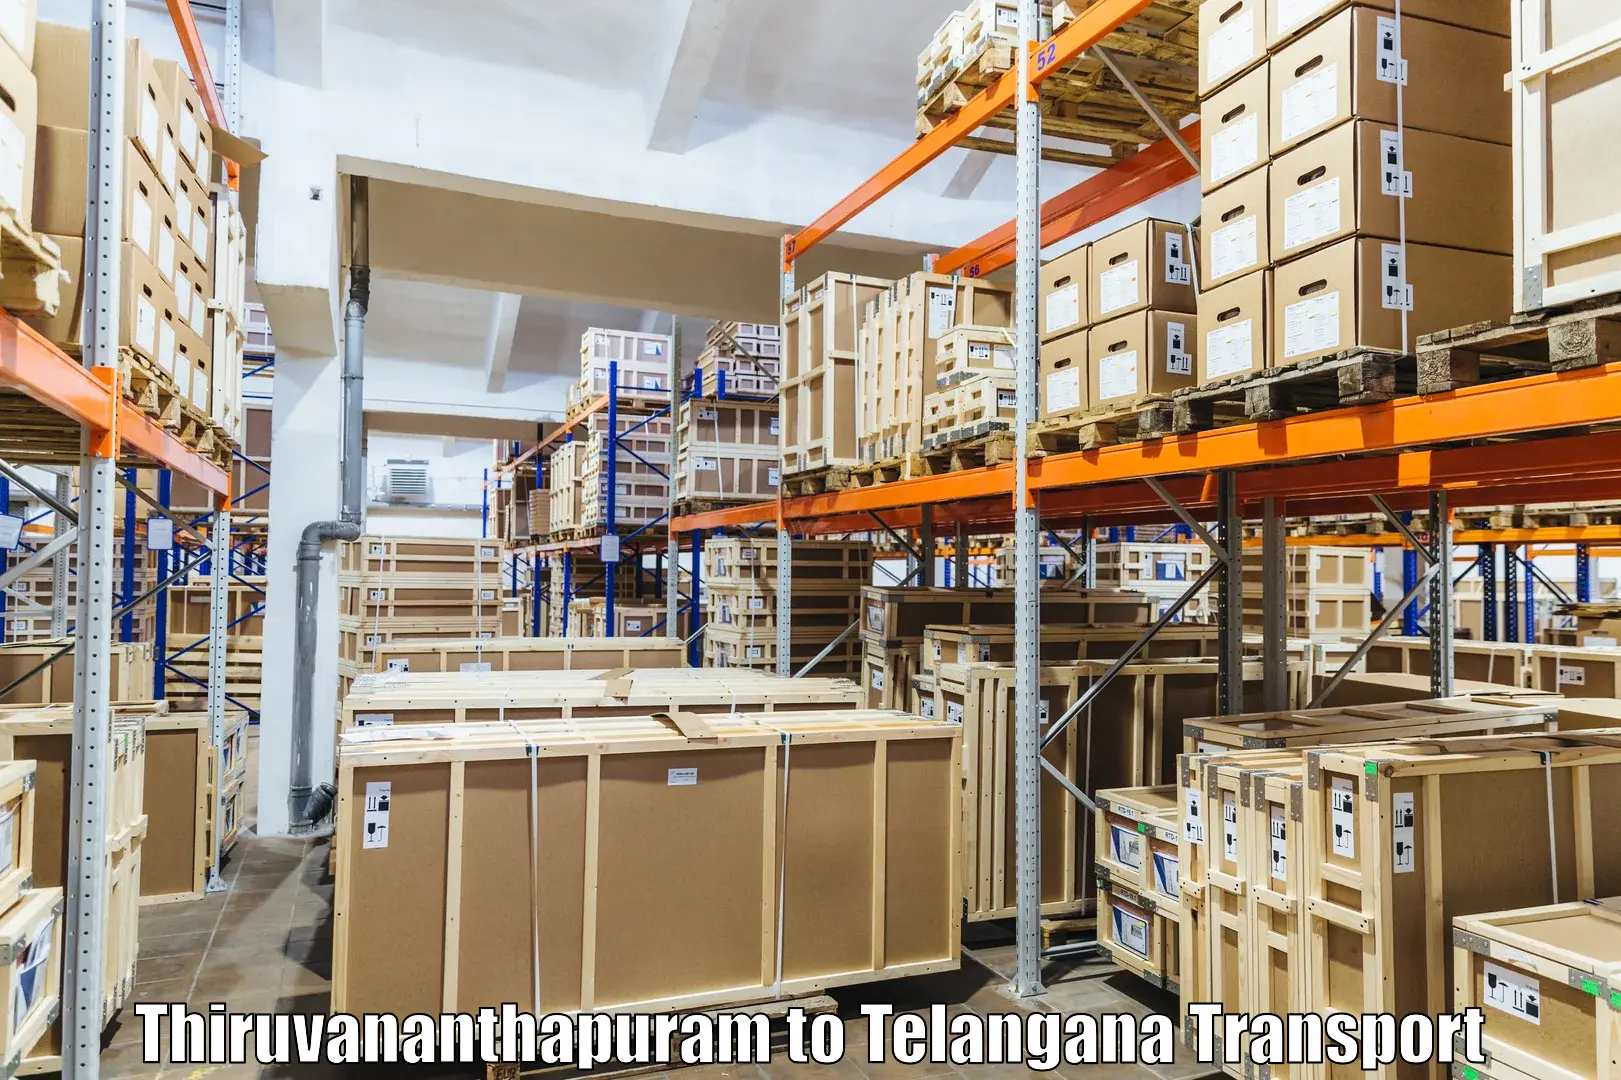 Air cargo transport services in Thiruvananthapuram to Karimnagar